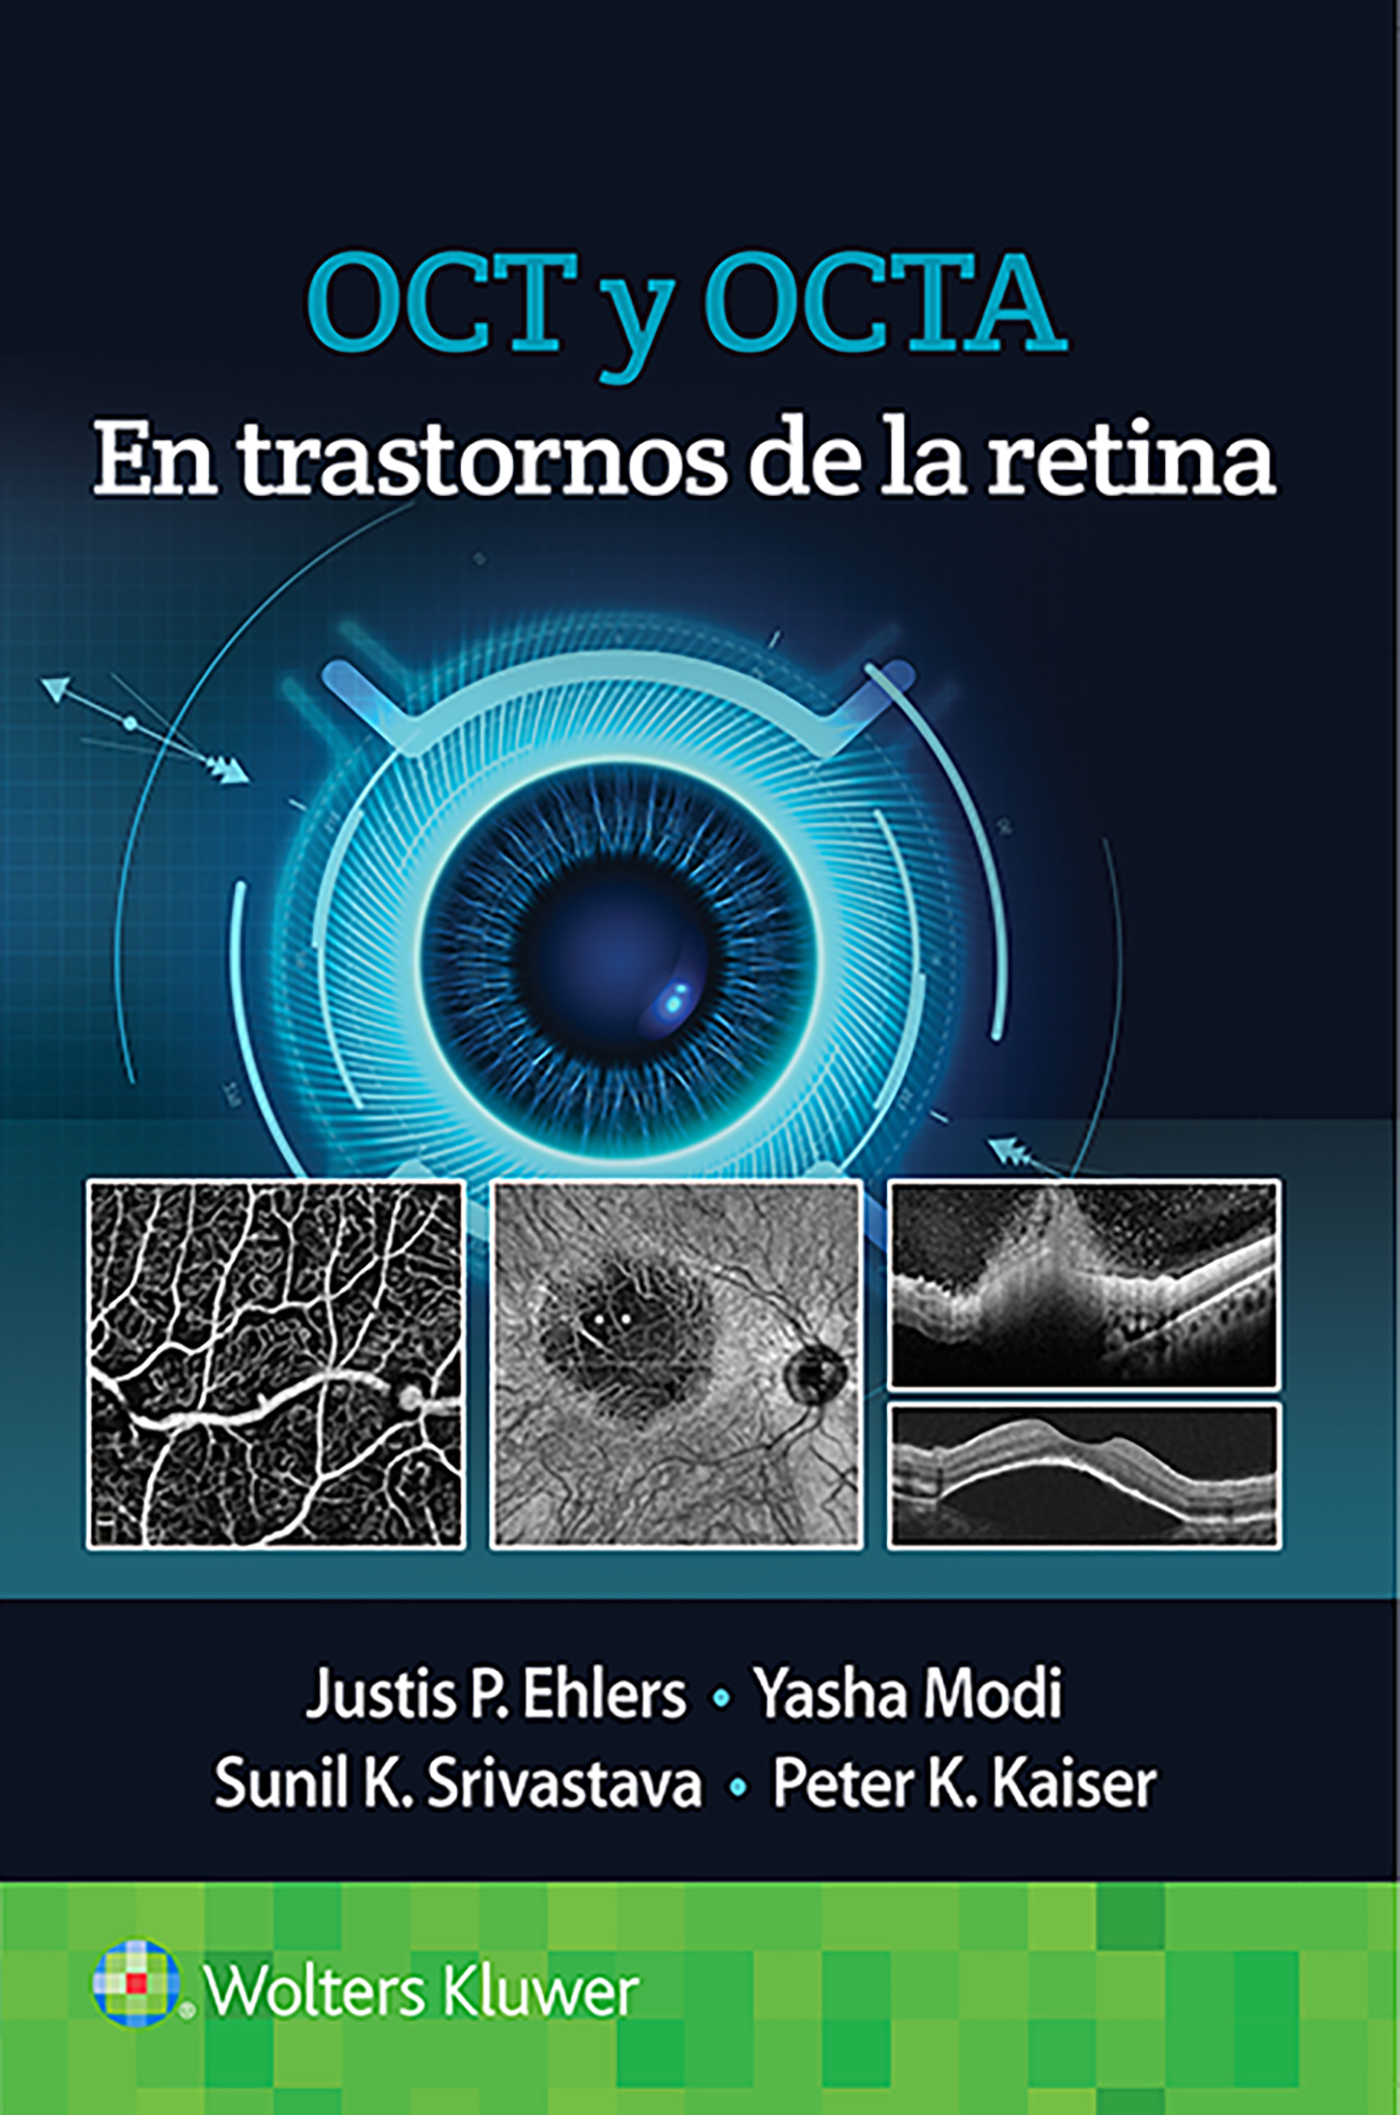 ISBN: 9788418563126 OCT Y OCTA EN TRASTORNOS DE LA RETINA